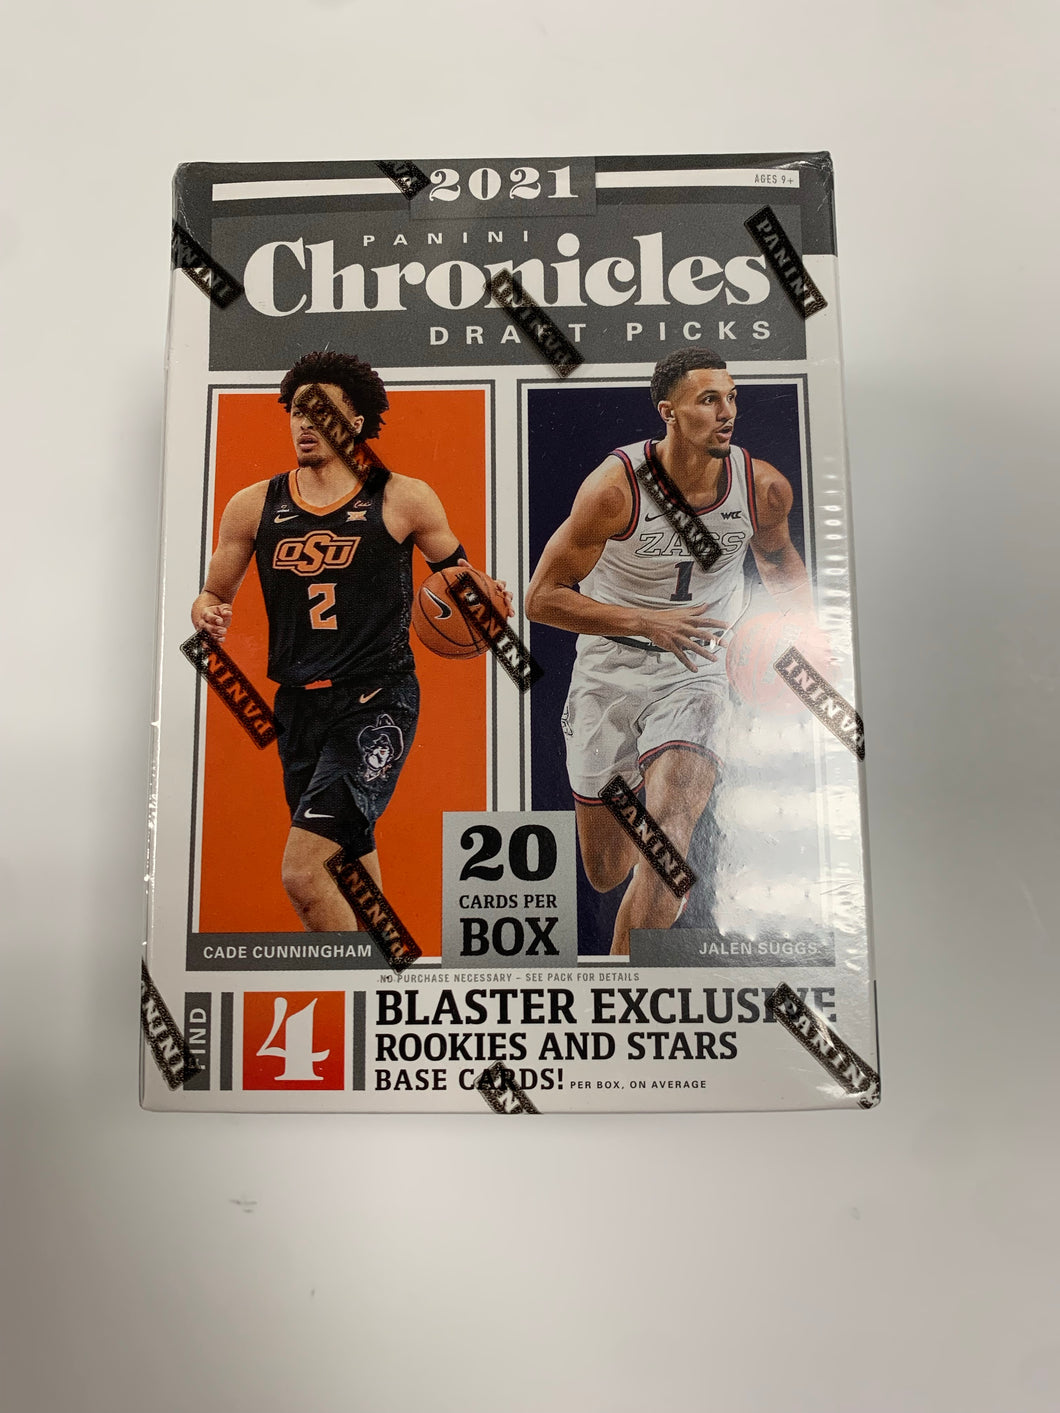 2021 Chronicles Draft Picks Basketball Blaster